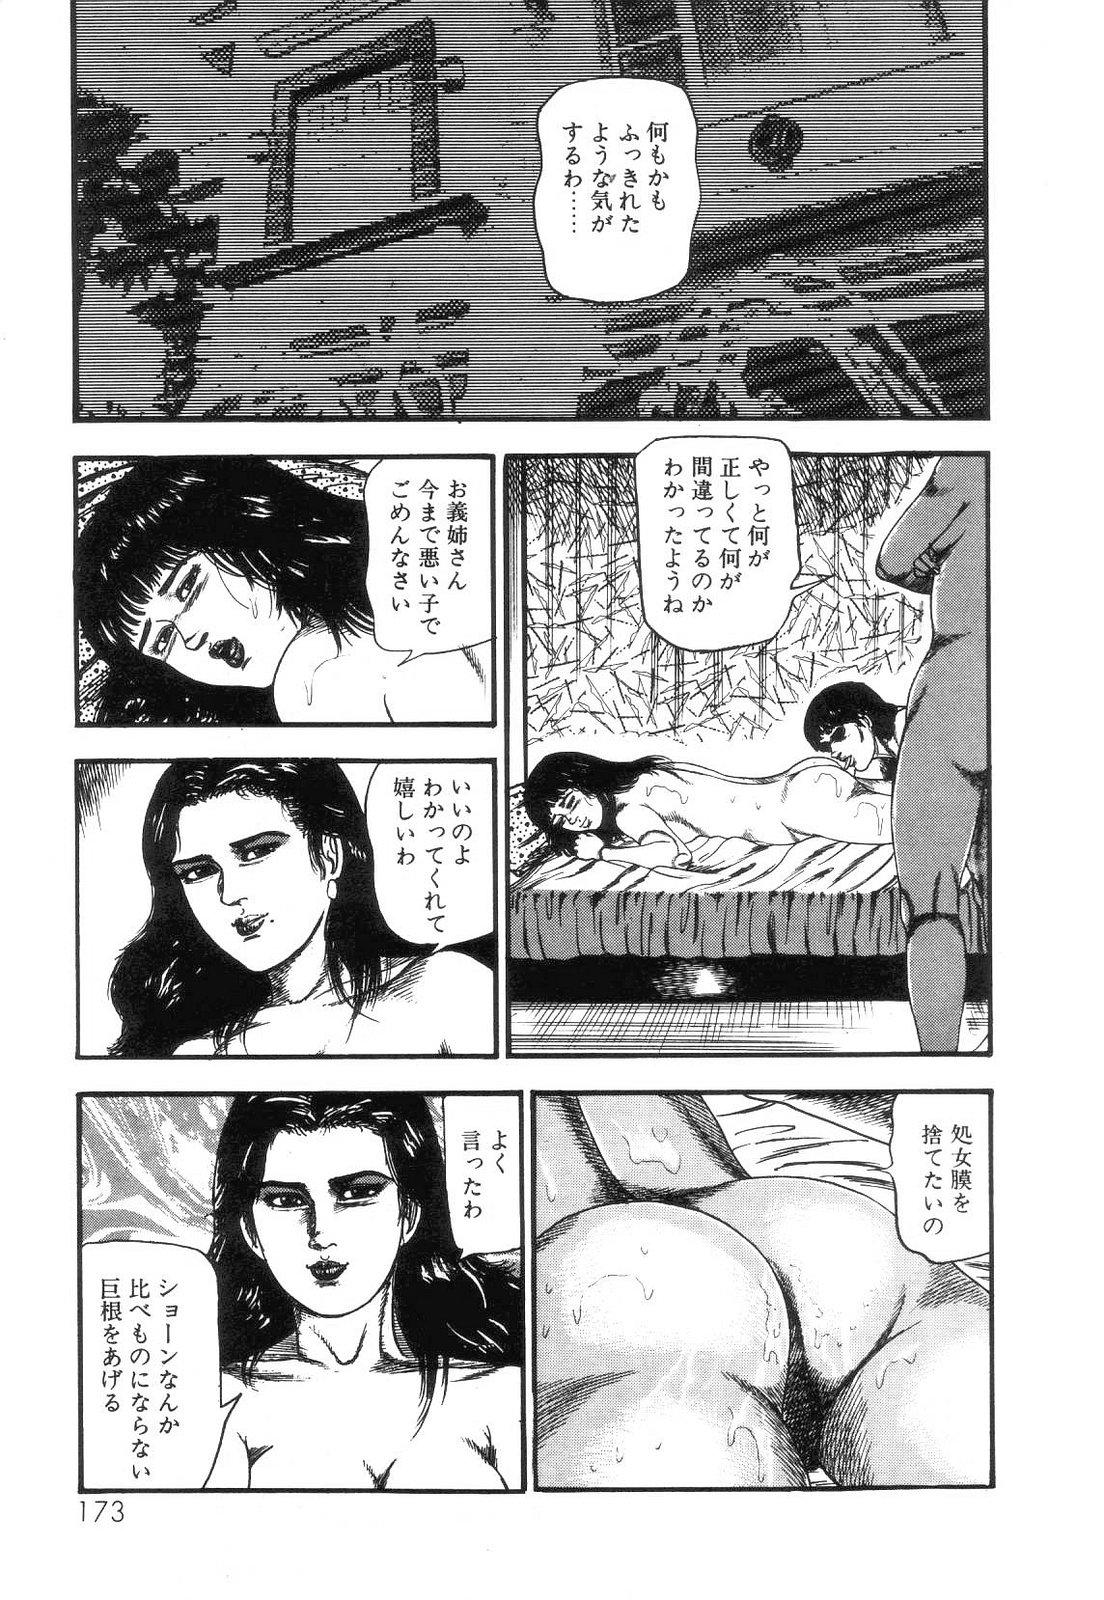 Shiro no Mokushiroku Vol. 4 - Bichiku Karen no Shou 174